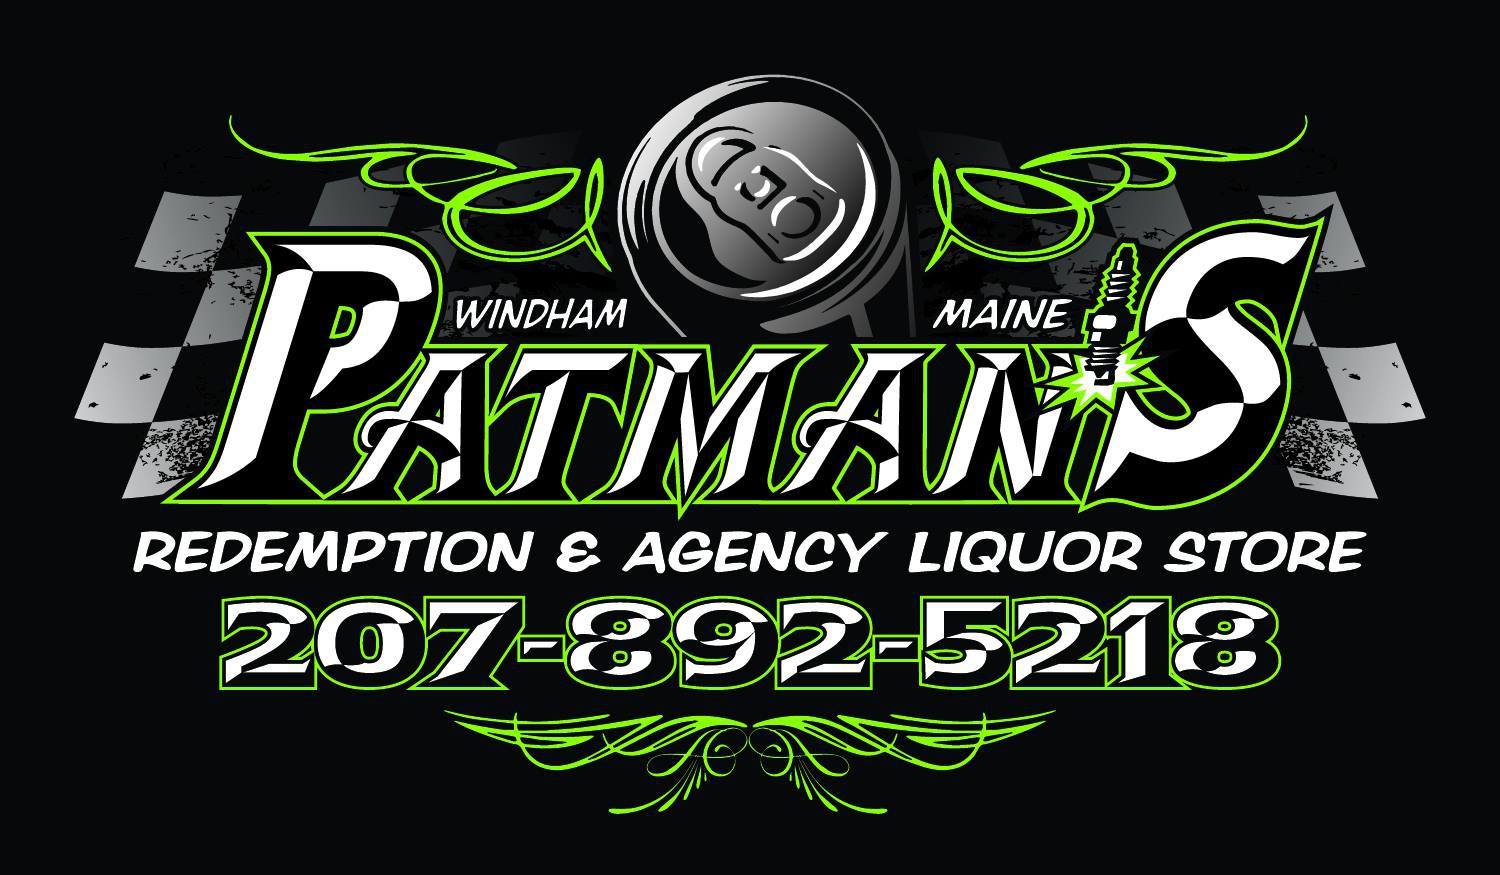 Patman’s Redemption Center & Agency Liquor Store